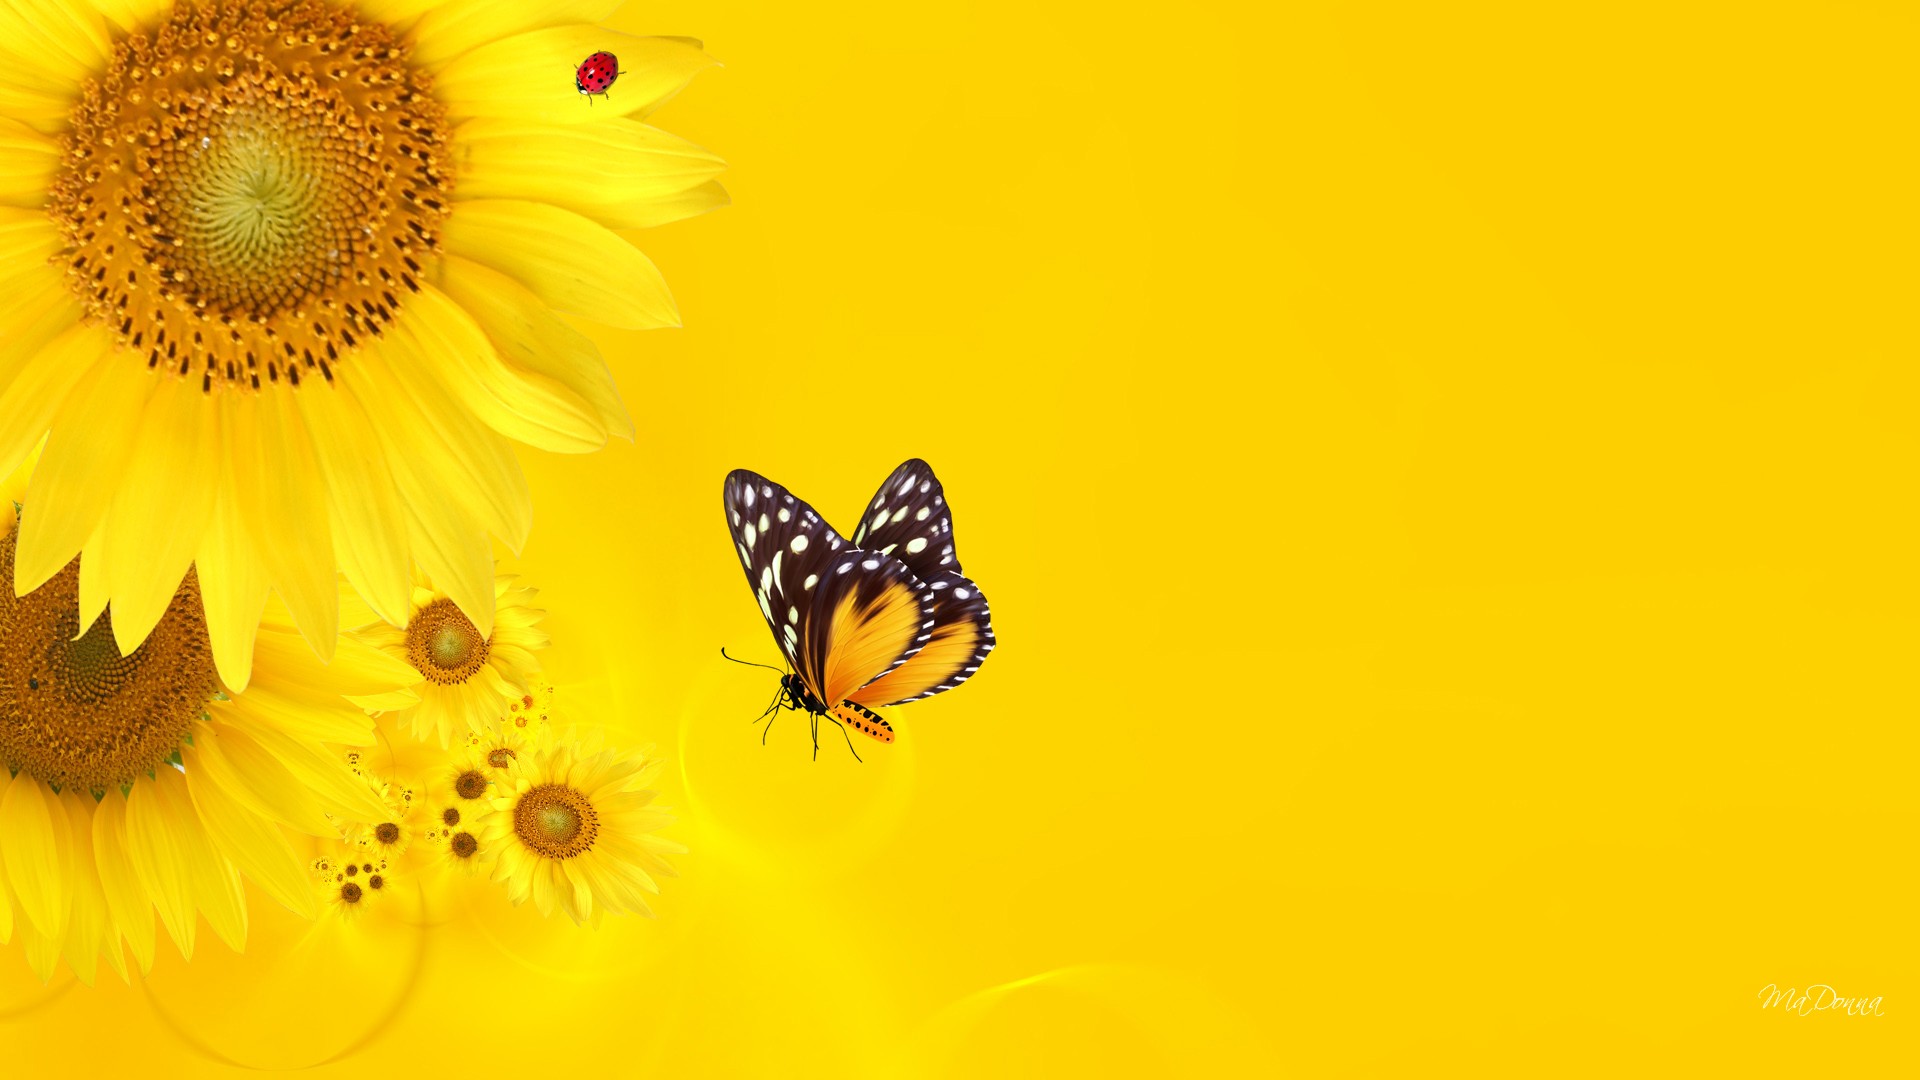 sfondo modalità ritratto,cynthia subgenus,la farfalla,insetto,giallo,macrofotografia